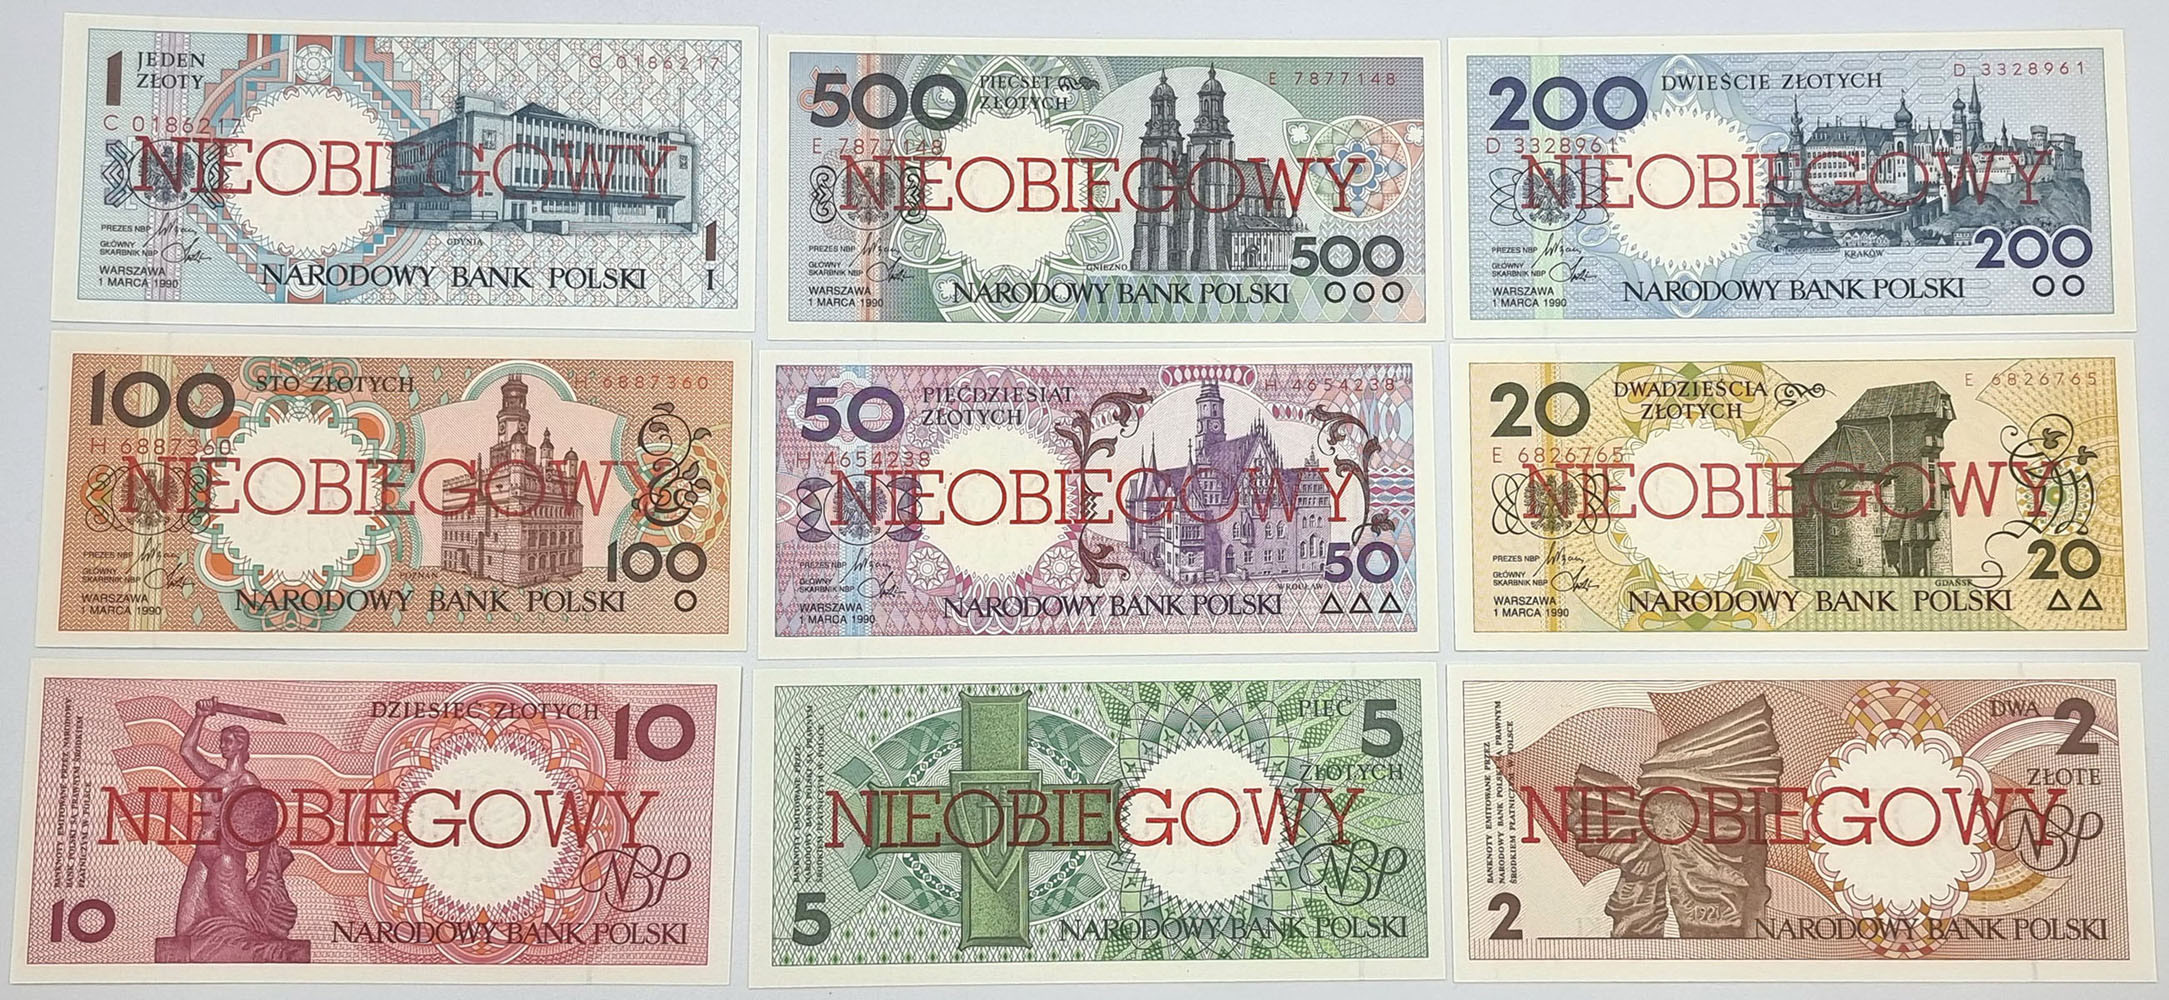 Miasta Polskie 1990 komplet banknotów 1-500 złotych - NIEOBIEGOWY